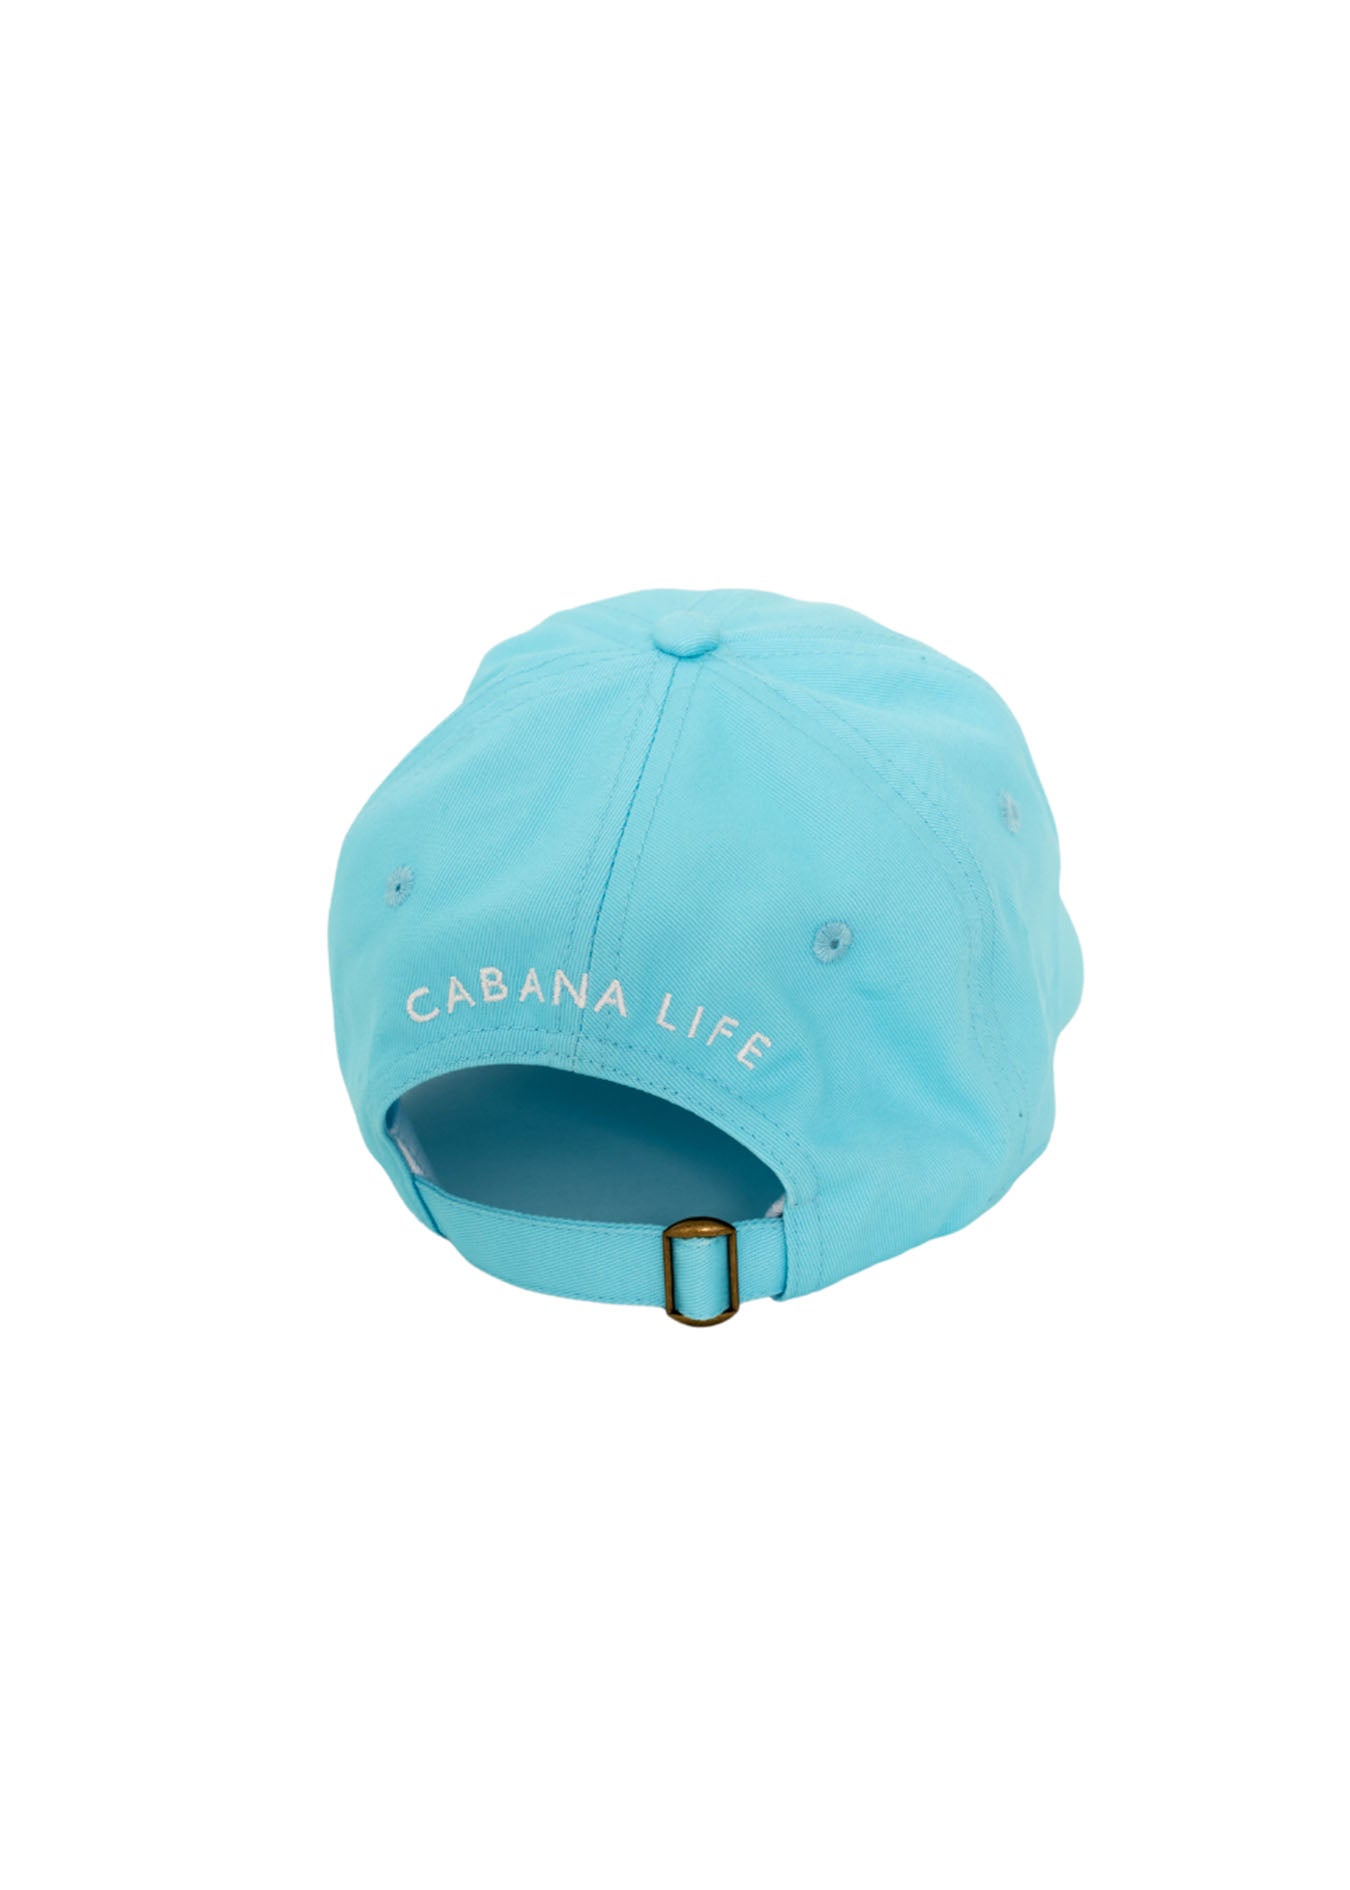 Back of Aqua Cabana Life Baseball Hat on white background